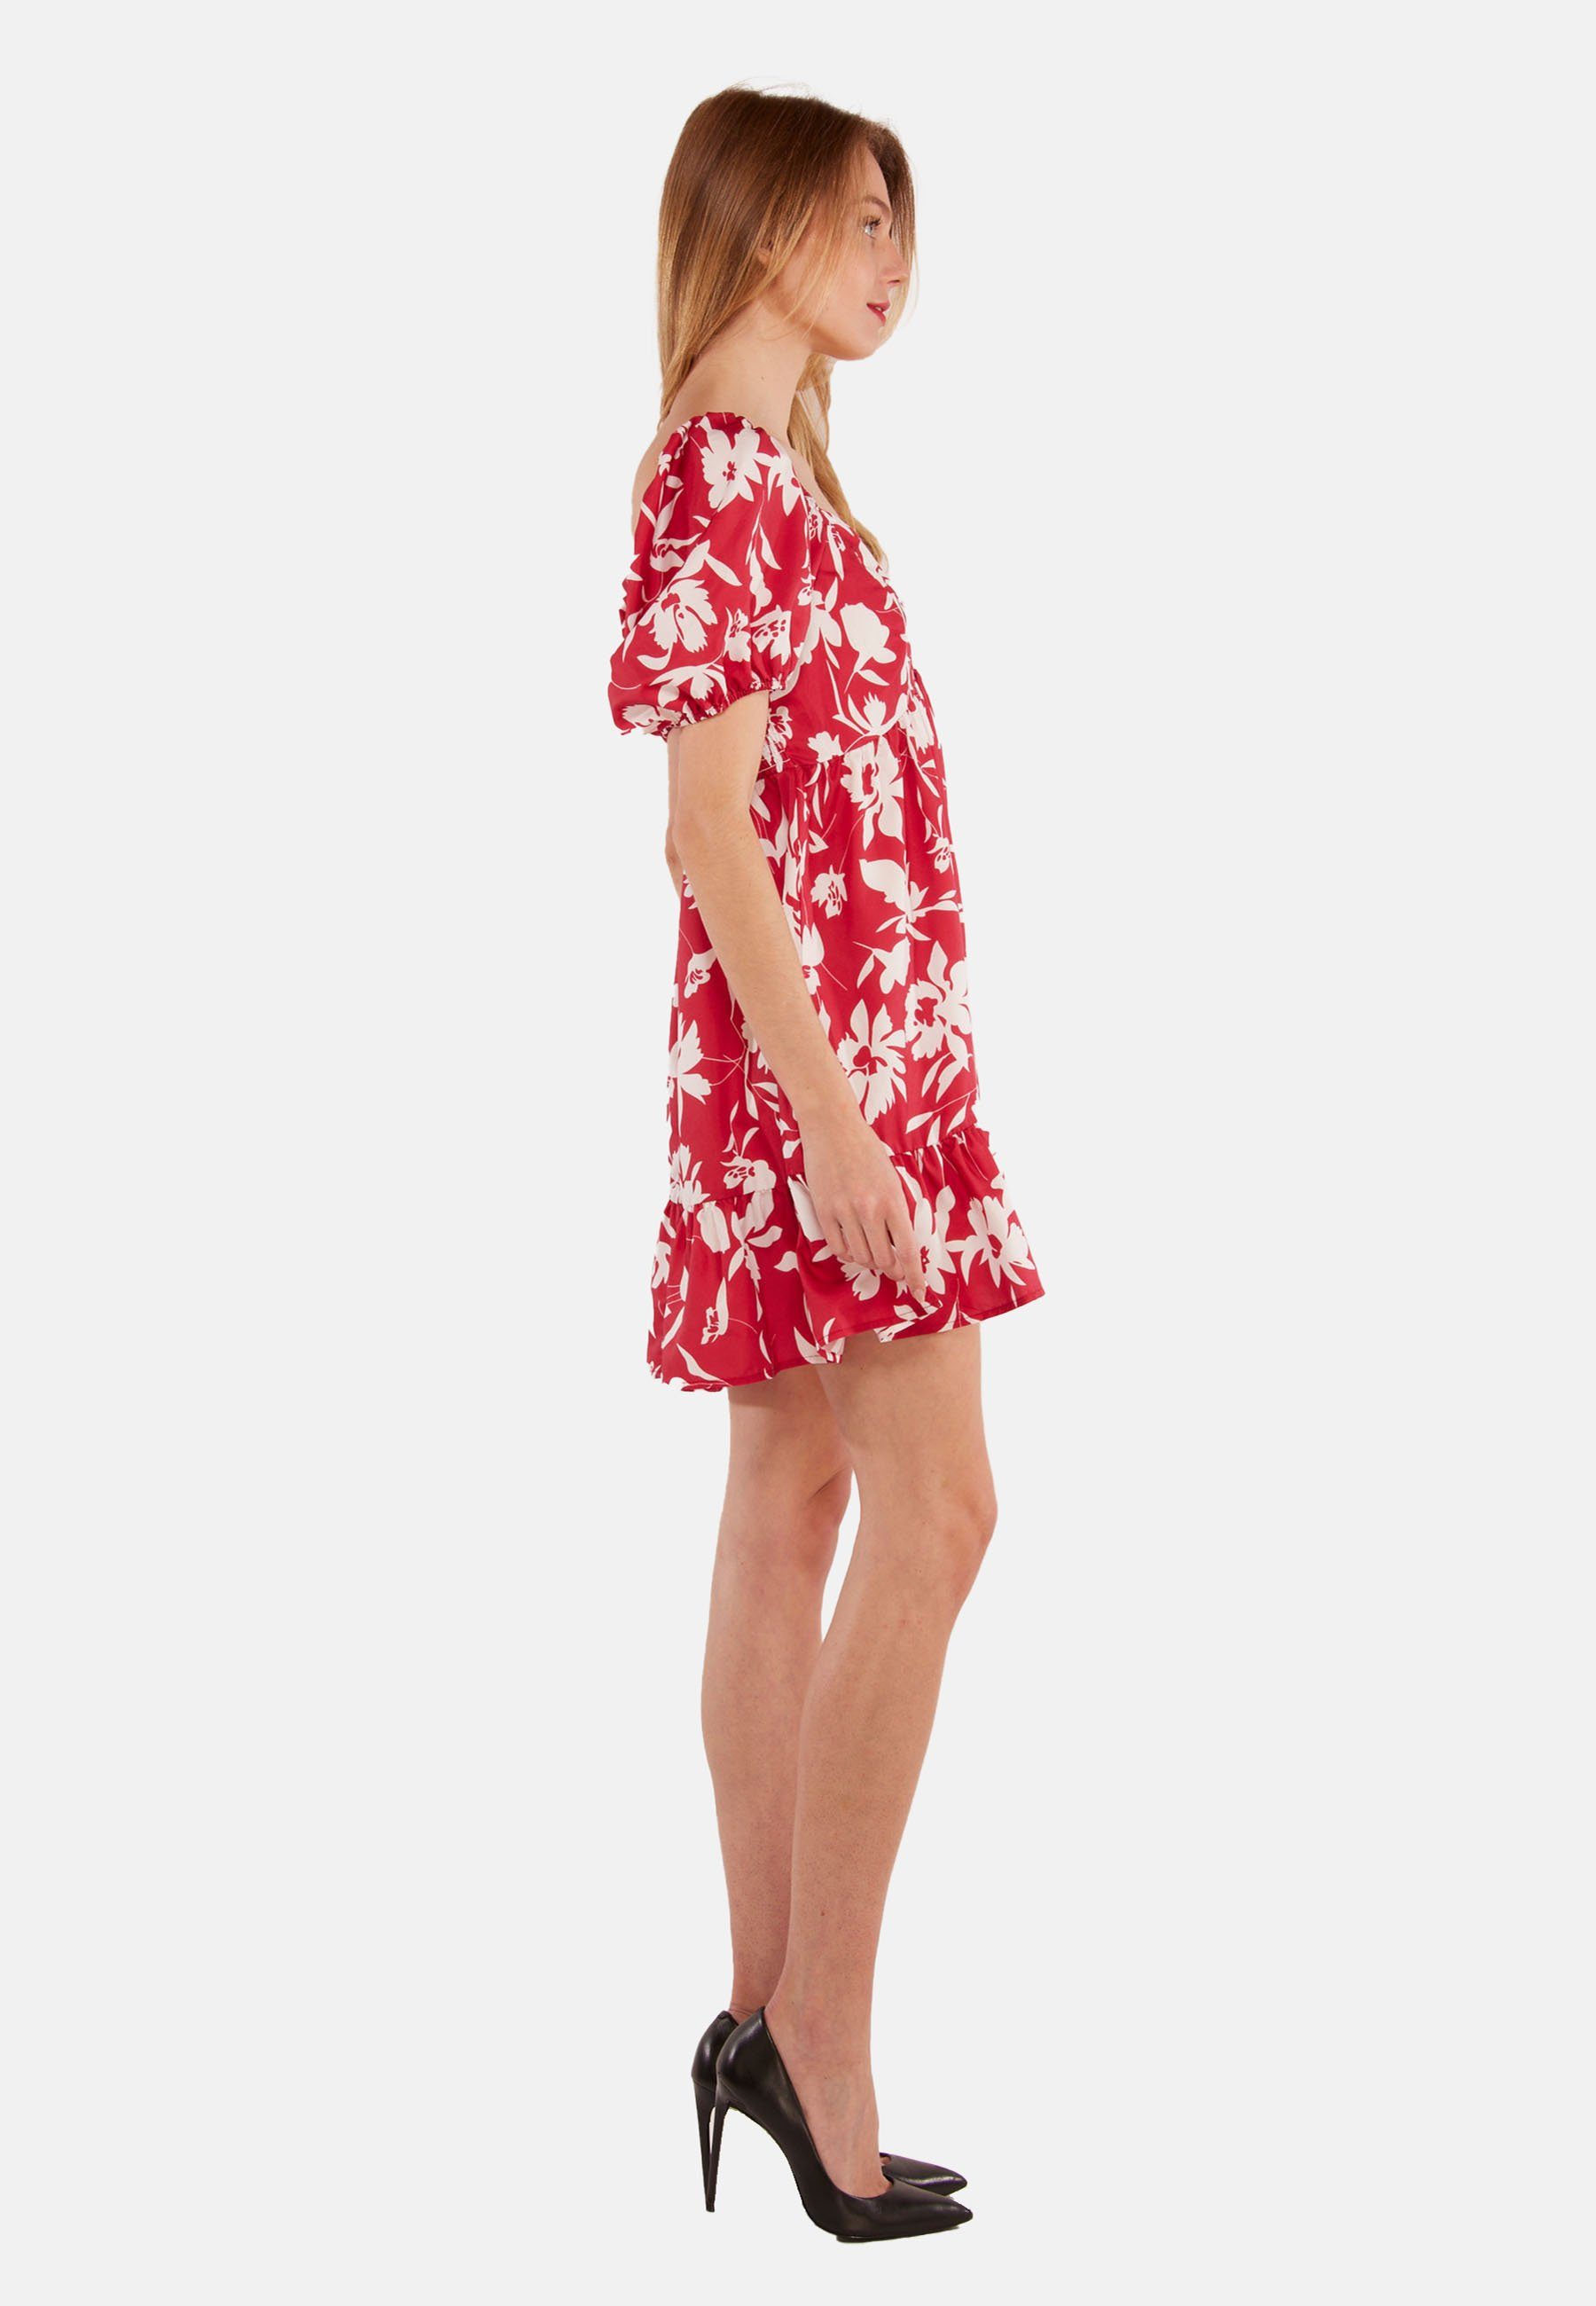 Kleid Minikleid atmungsaktiv Rot/weiss Flower Tooche